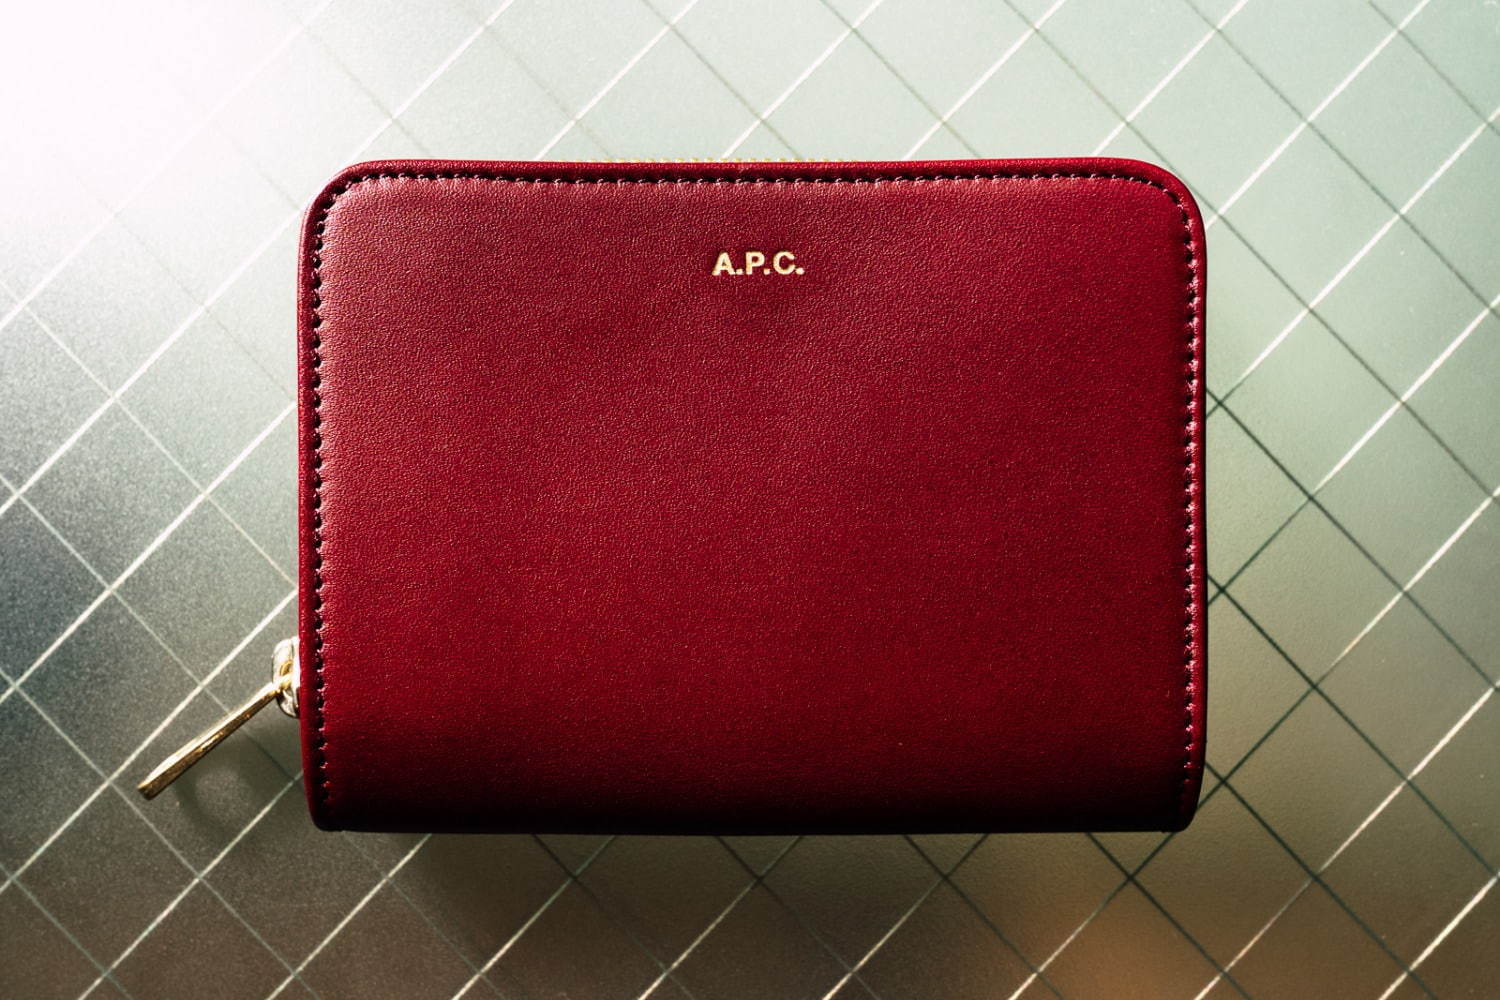 A.P.C.おすすめウォレット5選、シンプルなA.P.C.財布がなぜ人気 